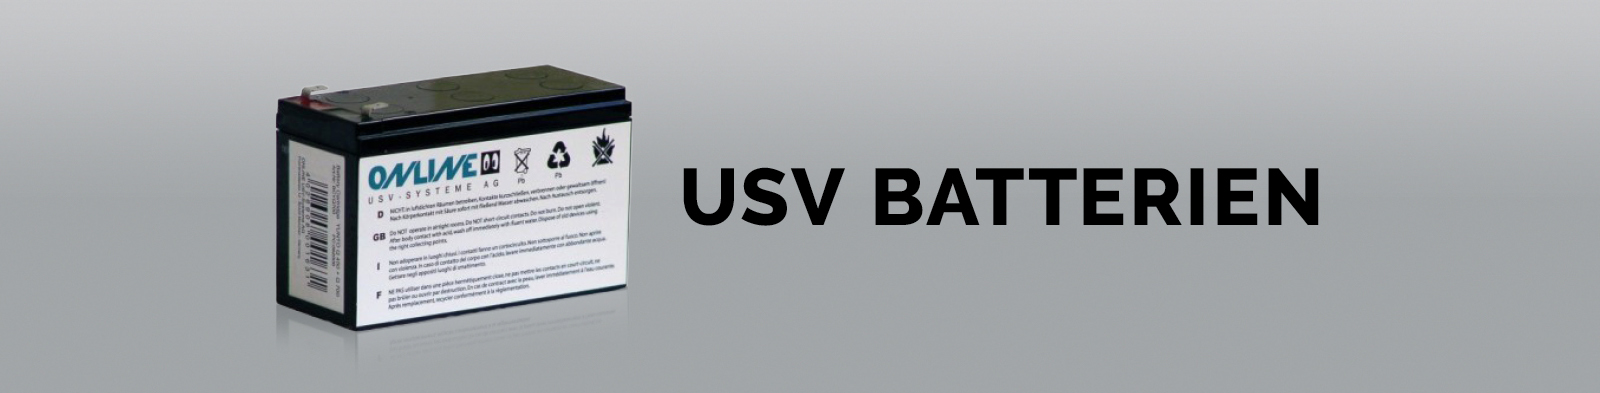 USV Batterien und Ersatzbatterien für Ihre USV-Anlage